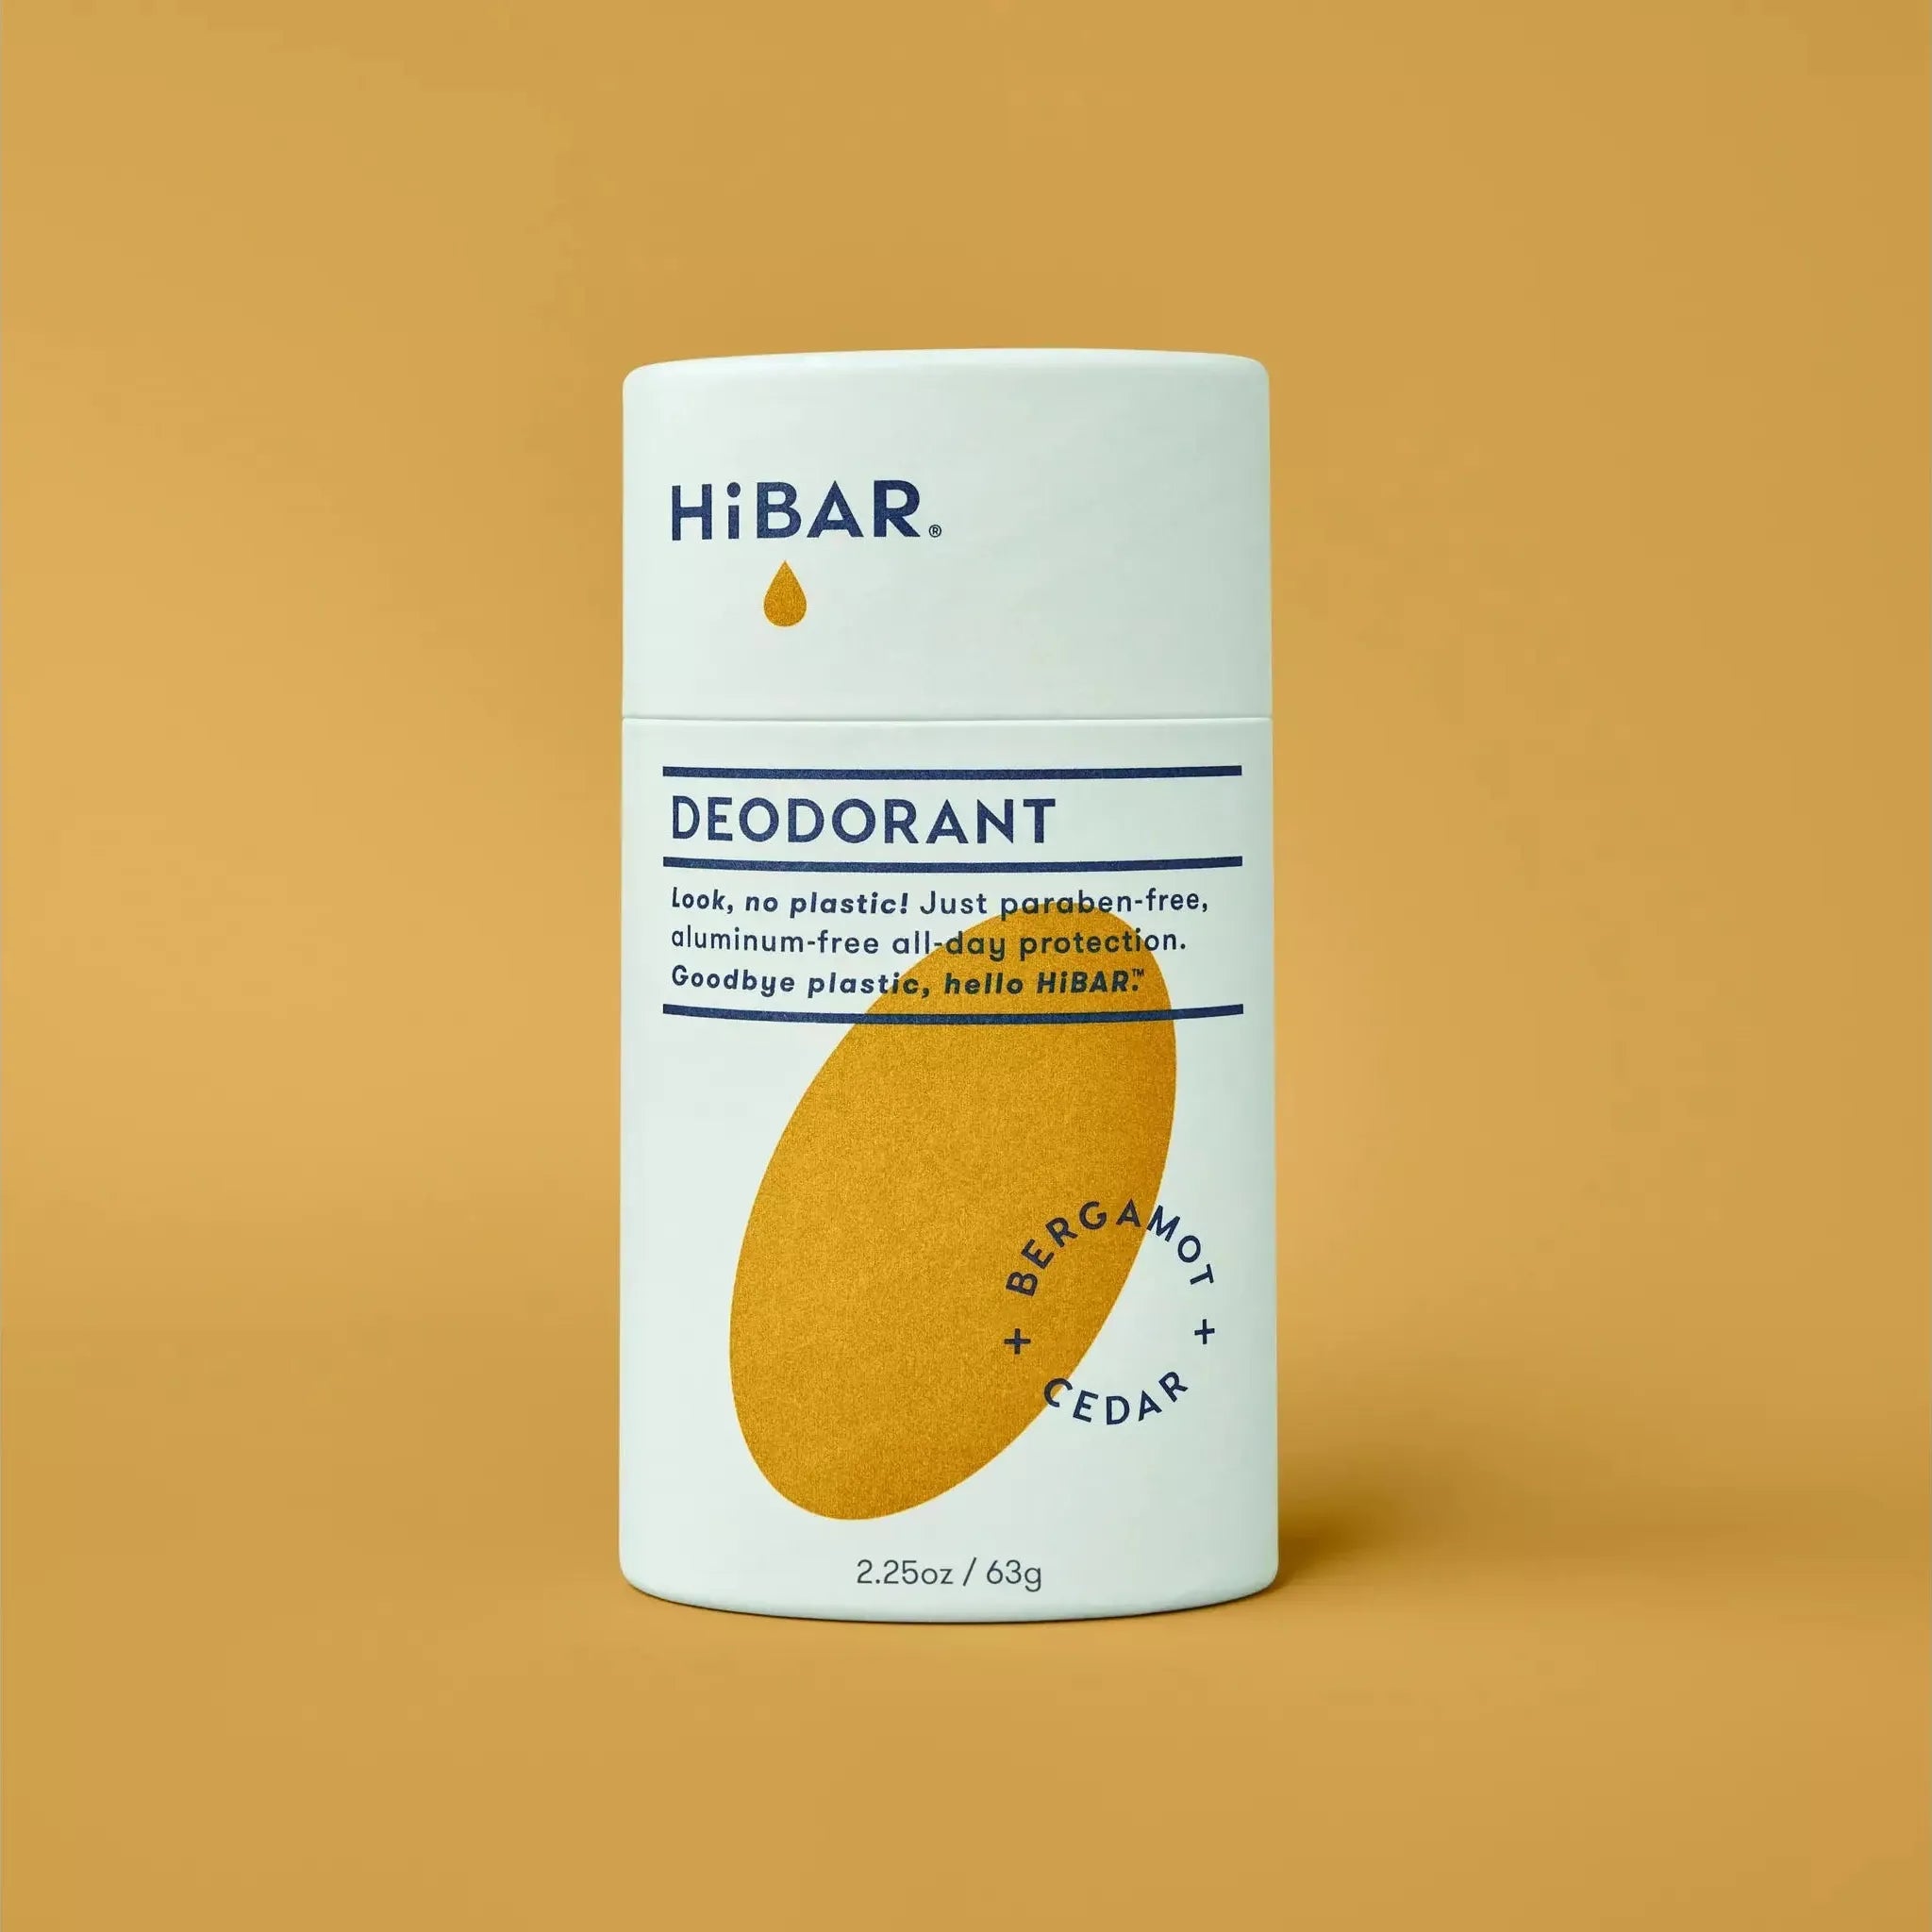 HiBar deodorant reviews